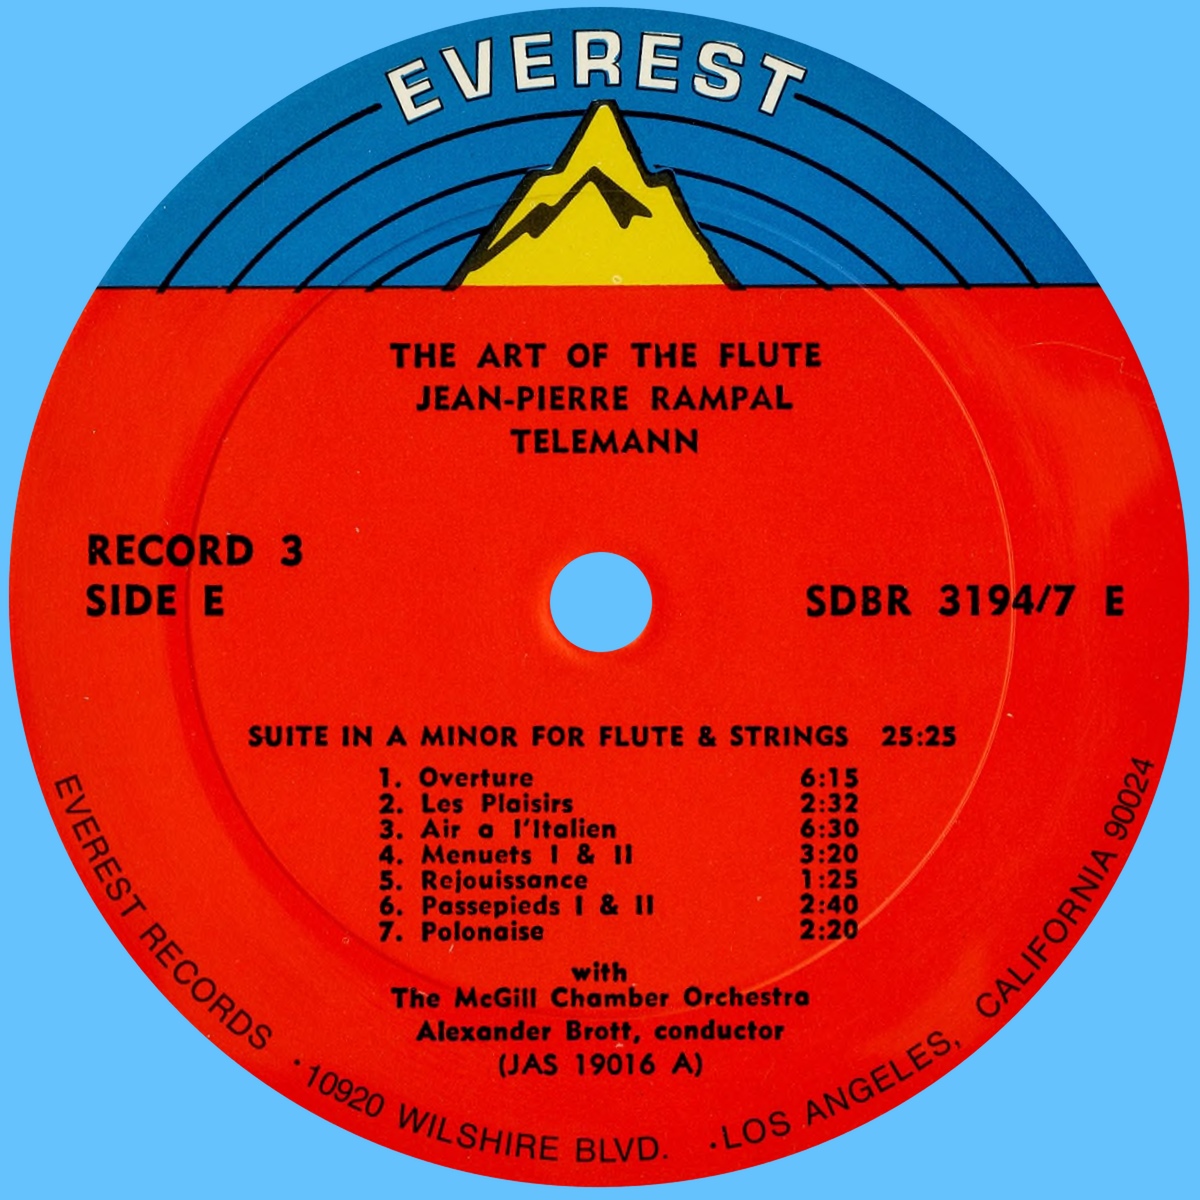 Étiquette recto du 3e disque du coffret Everest 3194-7